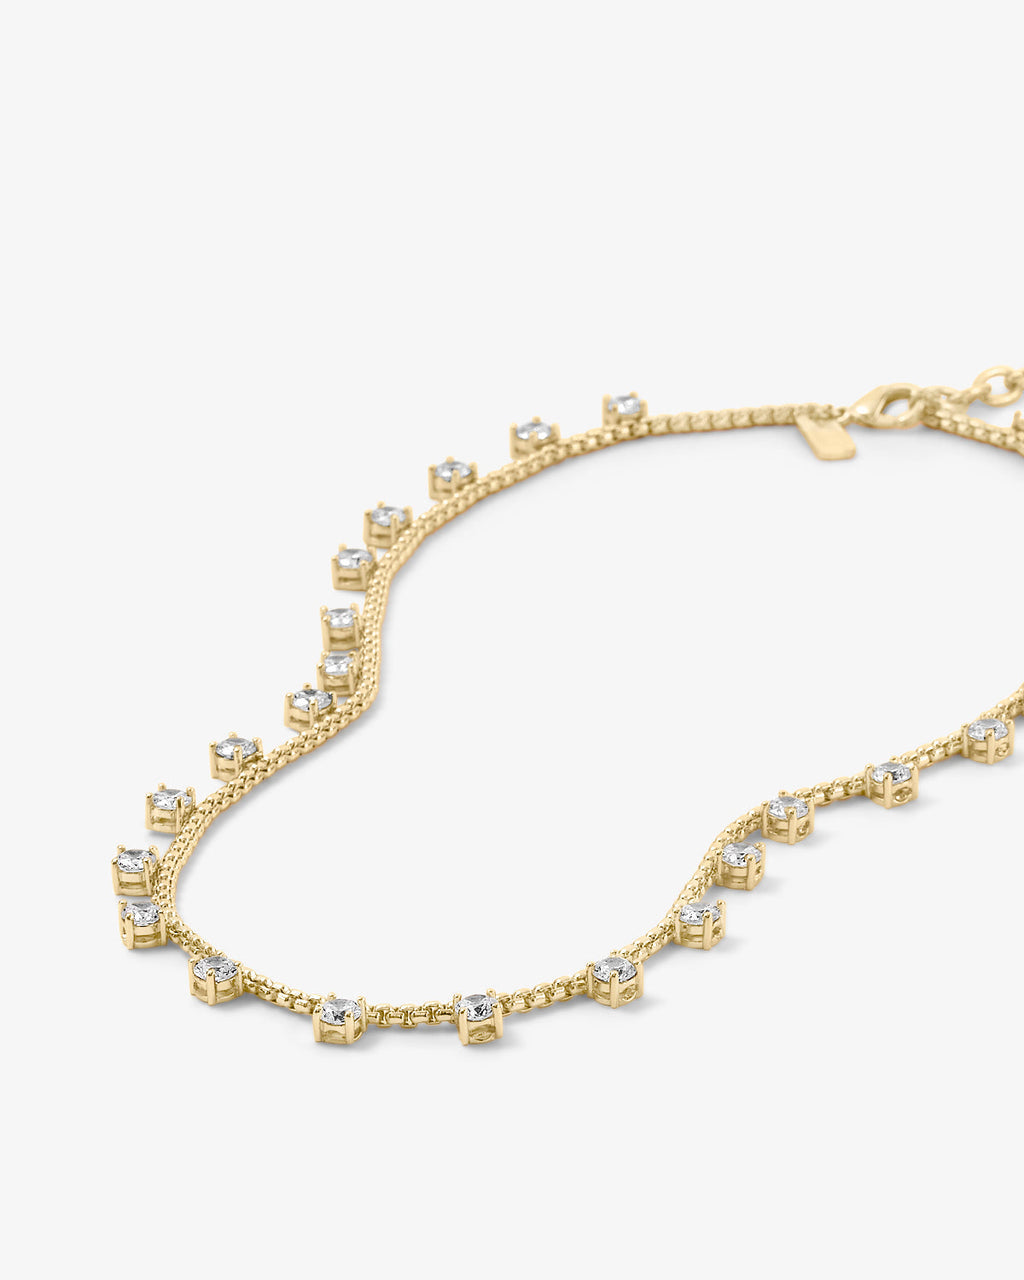 Lavish Necklace | Melinda Maria